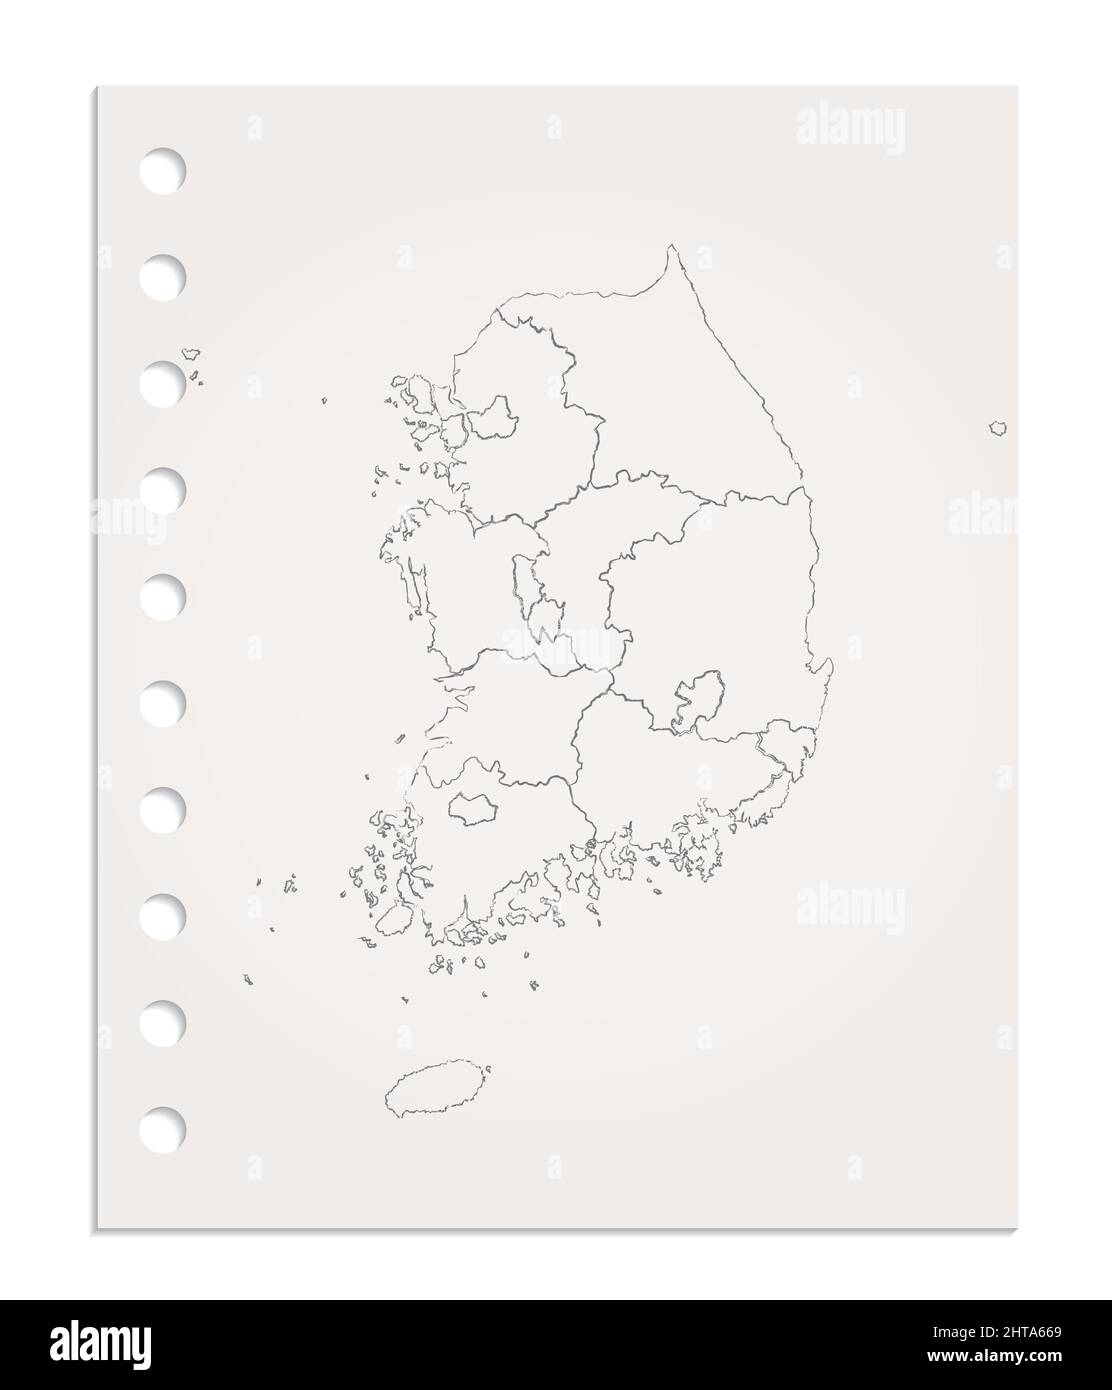 Mappa della Corea del Sud su fogli di carta puliti e realistici strappati dal blocco, vuoti Foto Stock